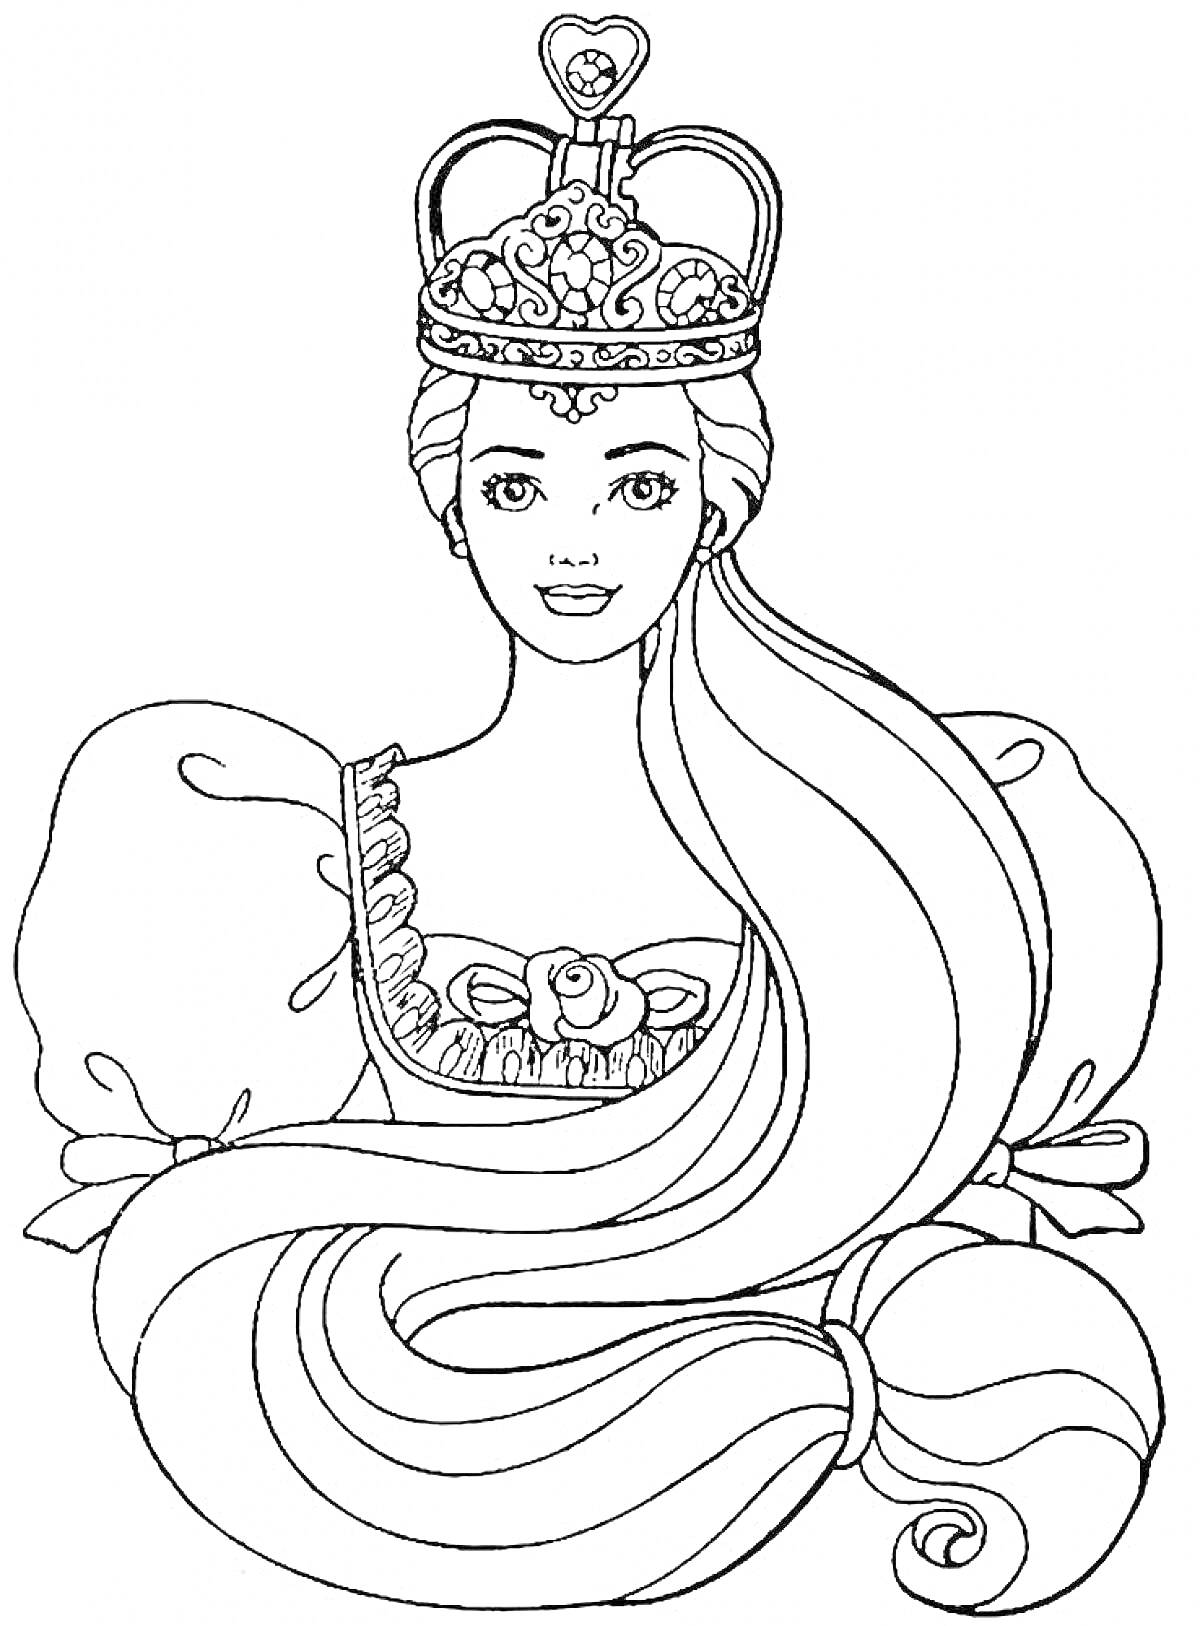 Принцесса с короной и длинными волосами в пышном платье